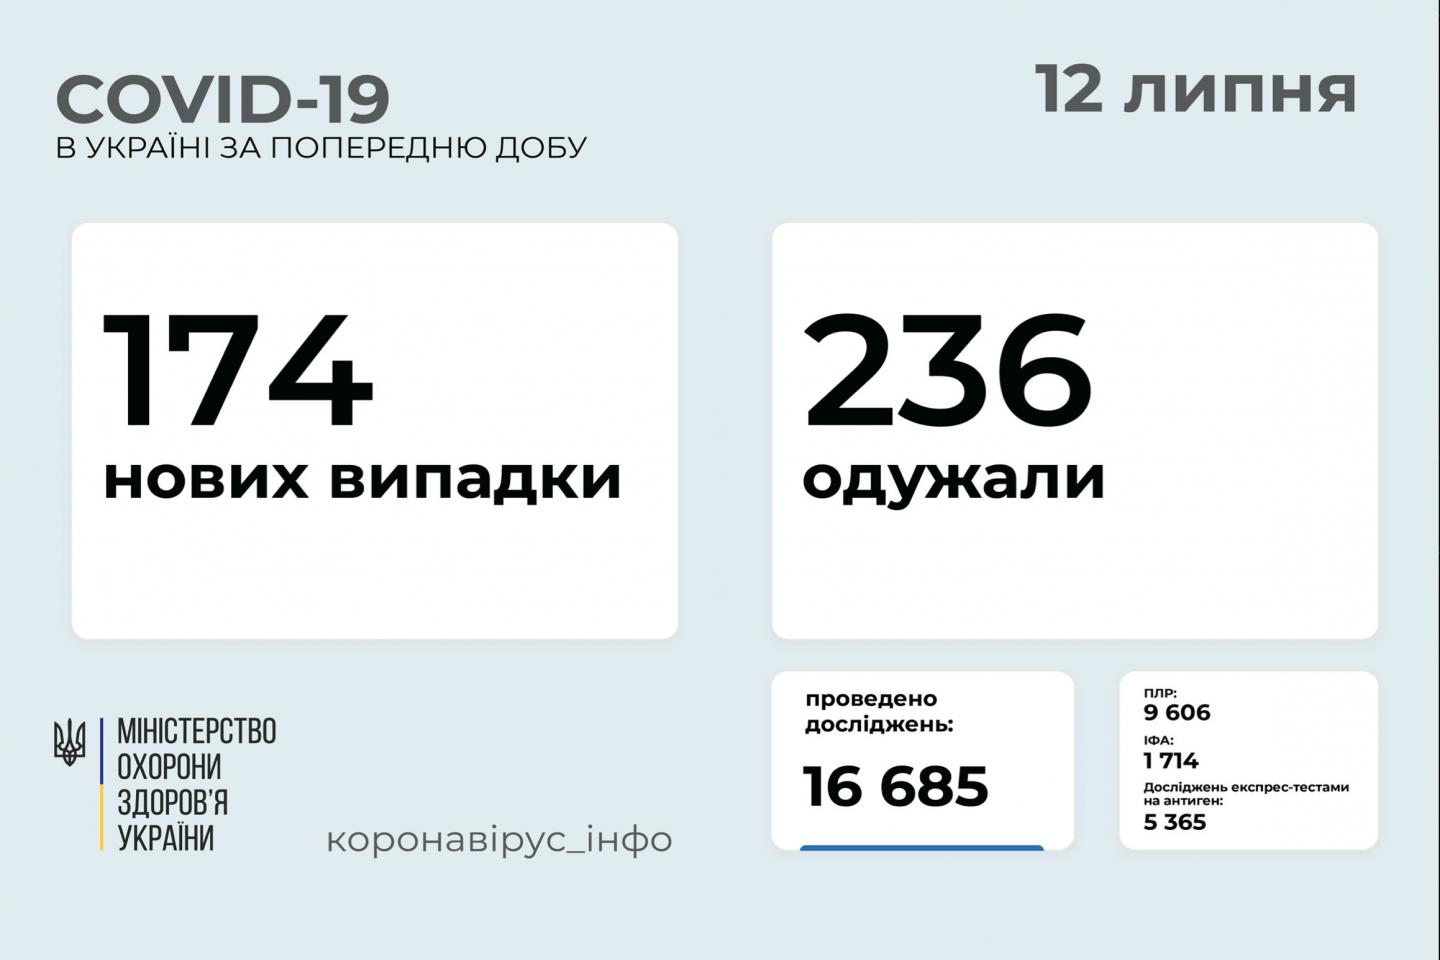 http://dunrada.gov.ua/uploadfile/archive_news/2021/07/12/2021-07-12_279/images/images-82759.jpg